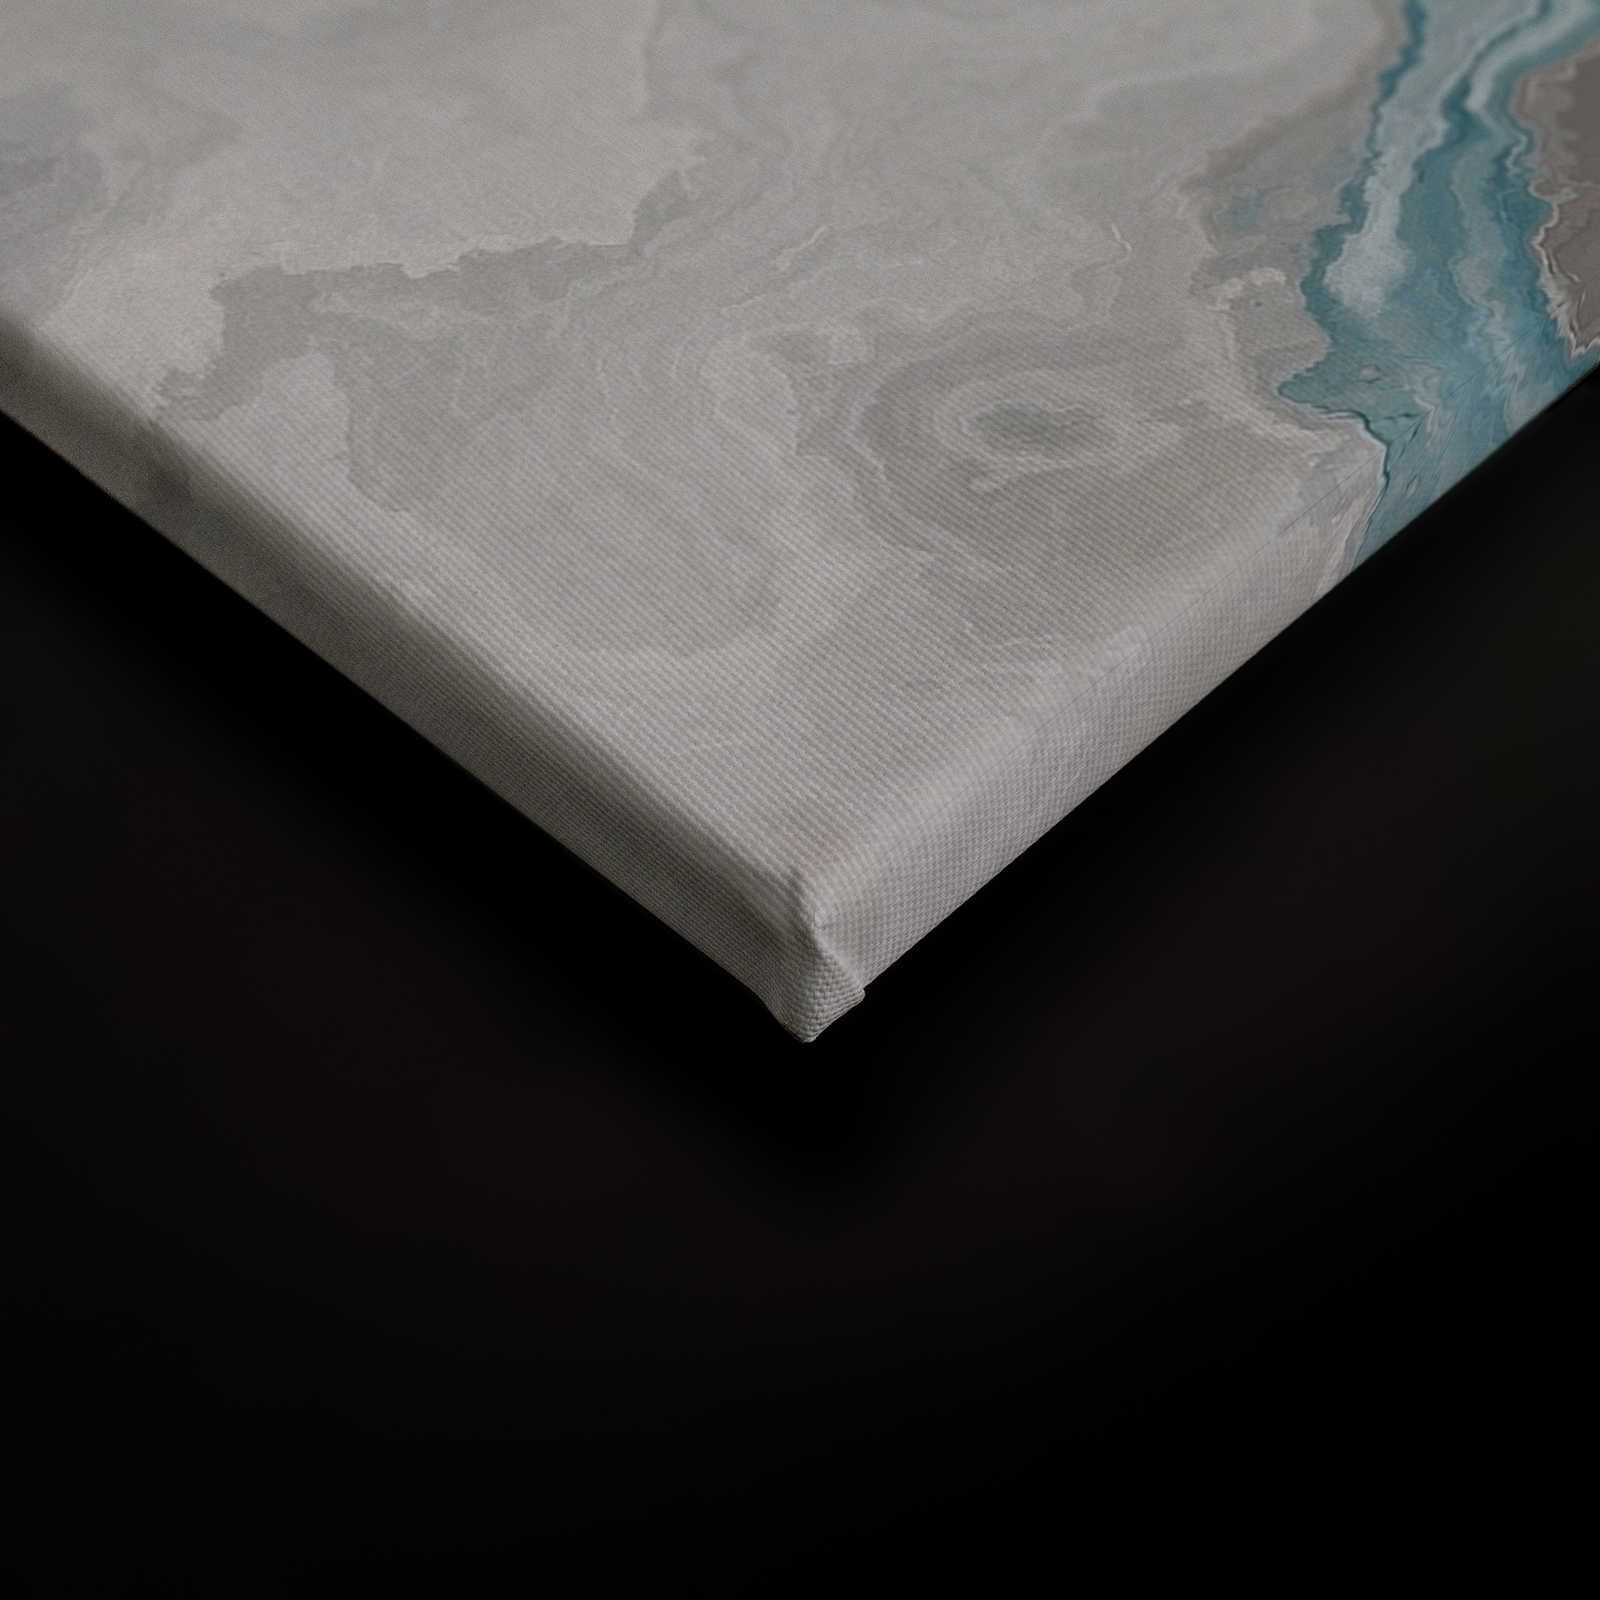             Quadro su tela marmorizzata con ottica al quarzo - 1,20 m x 0,80 m
        